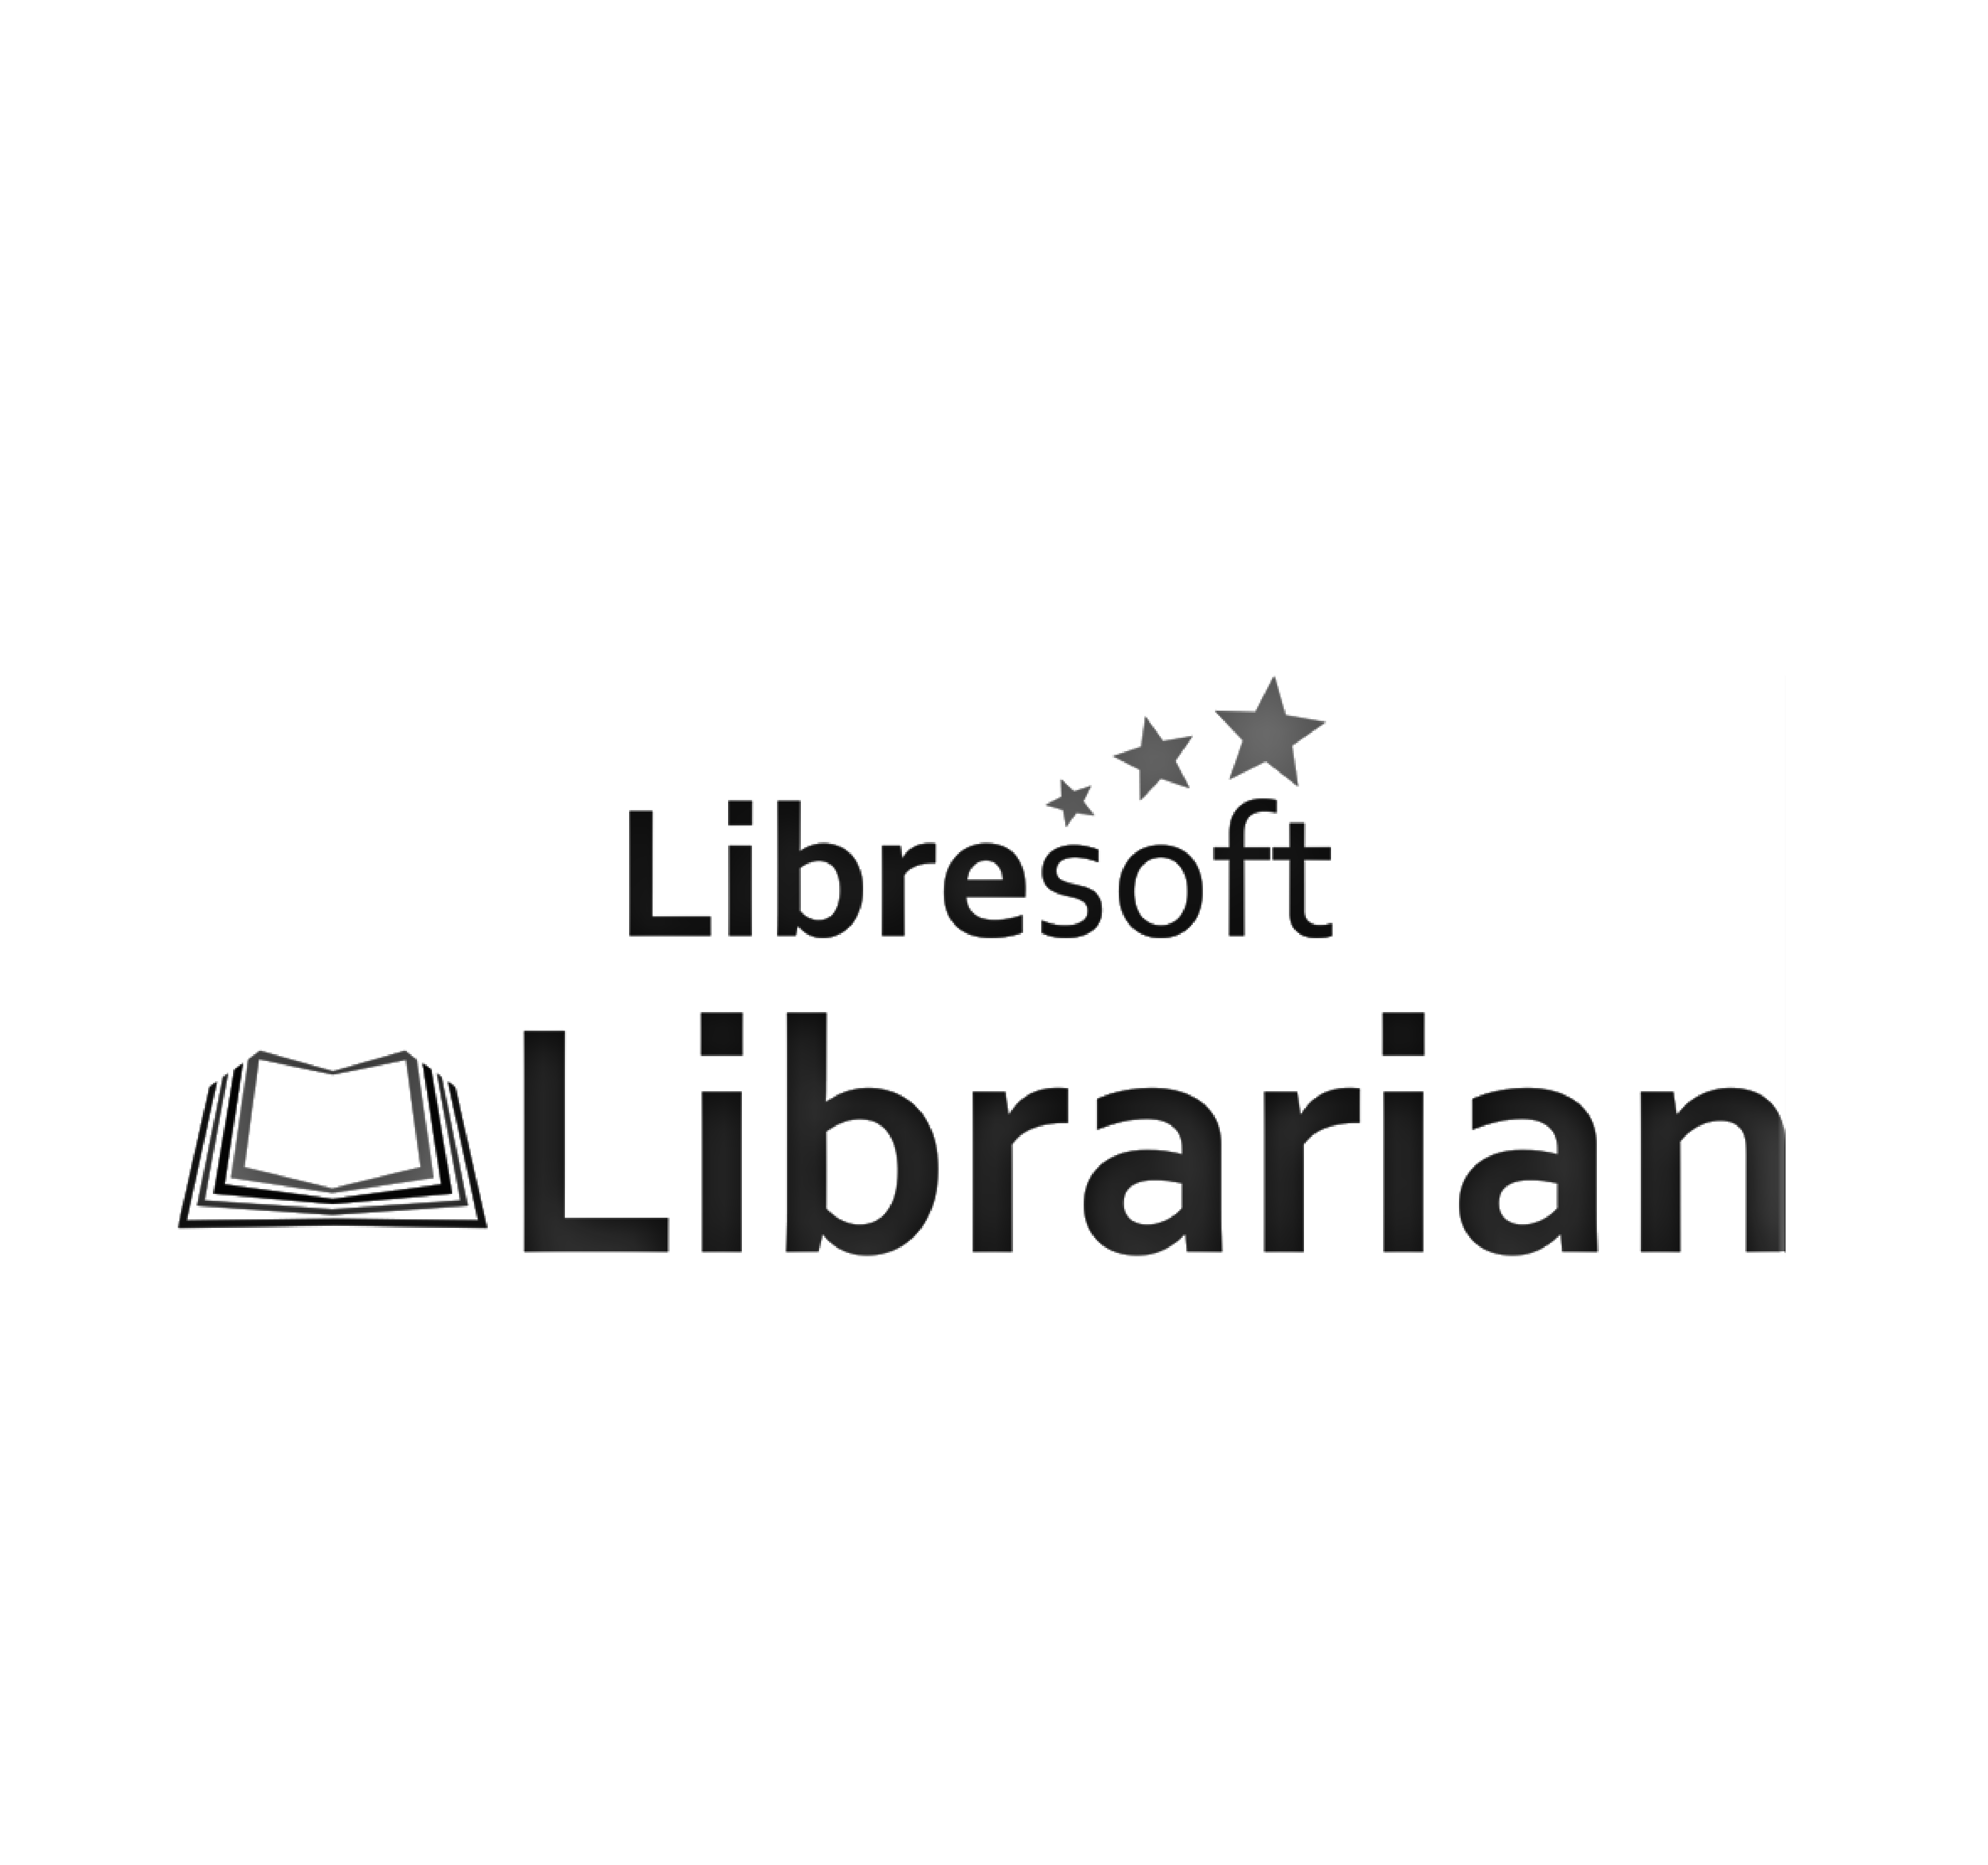 Libresoft